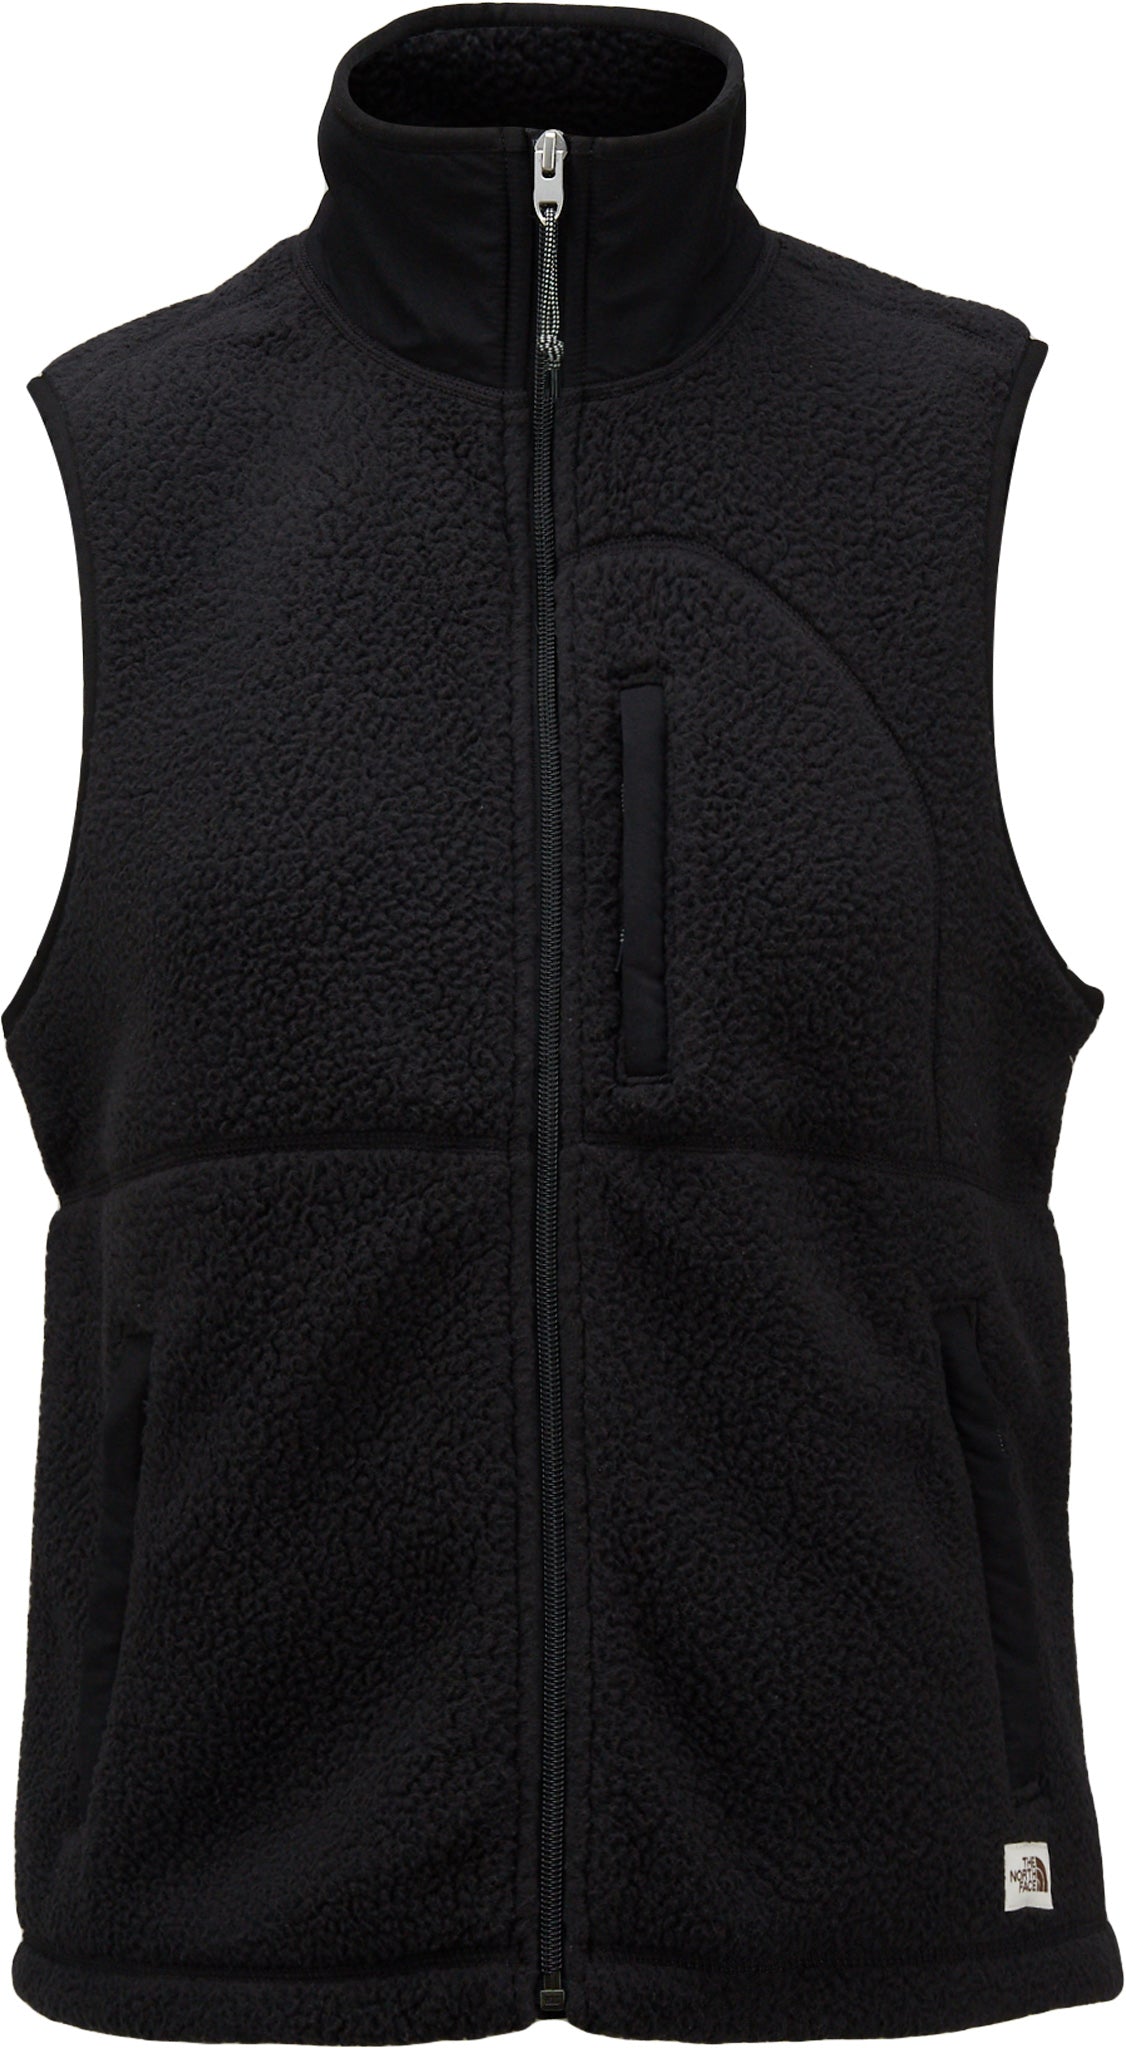 Women's Cragmont Fleece Jacket TNF BLACK, Buy Women's Cragmont Fleece  Jacket TNF BLACK here